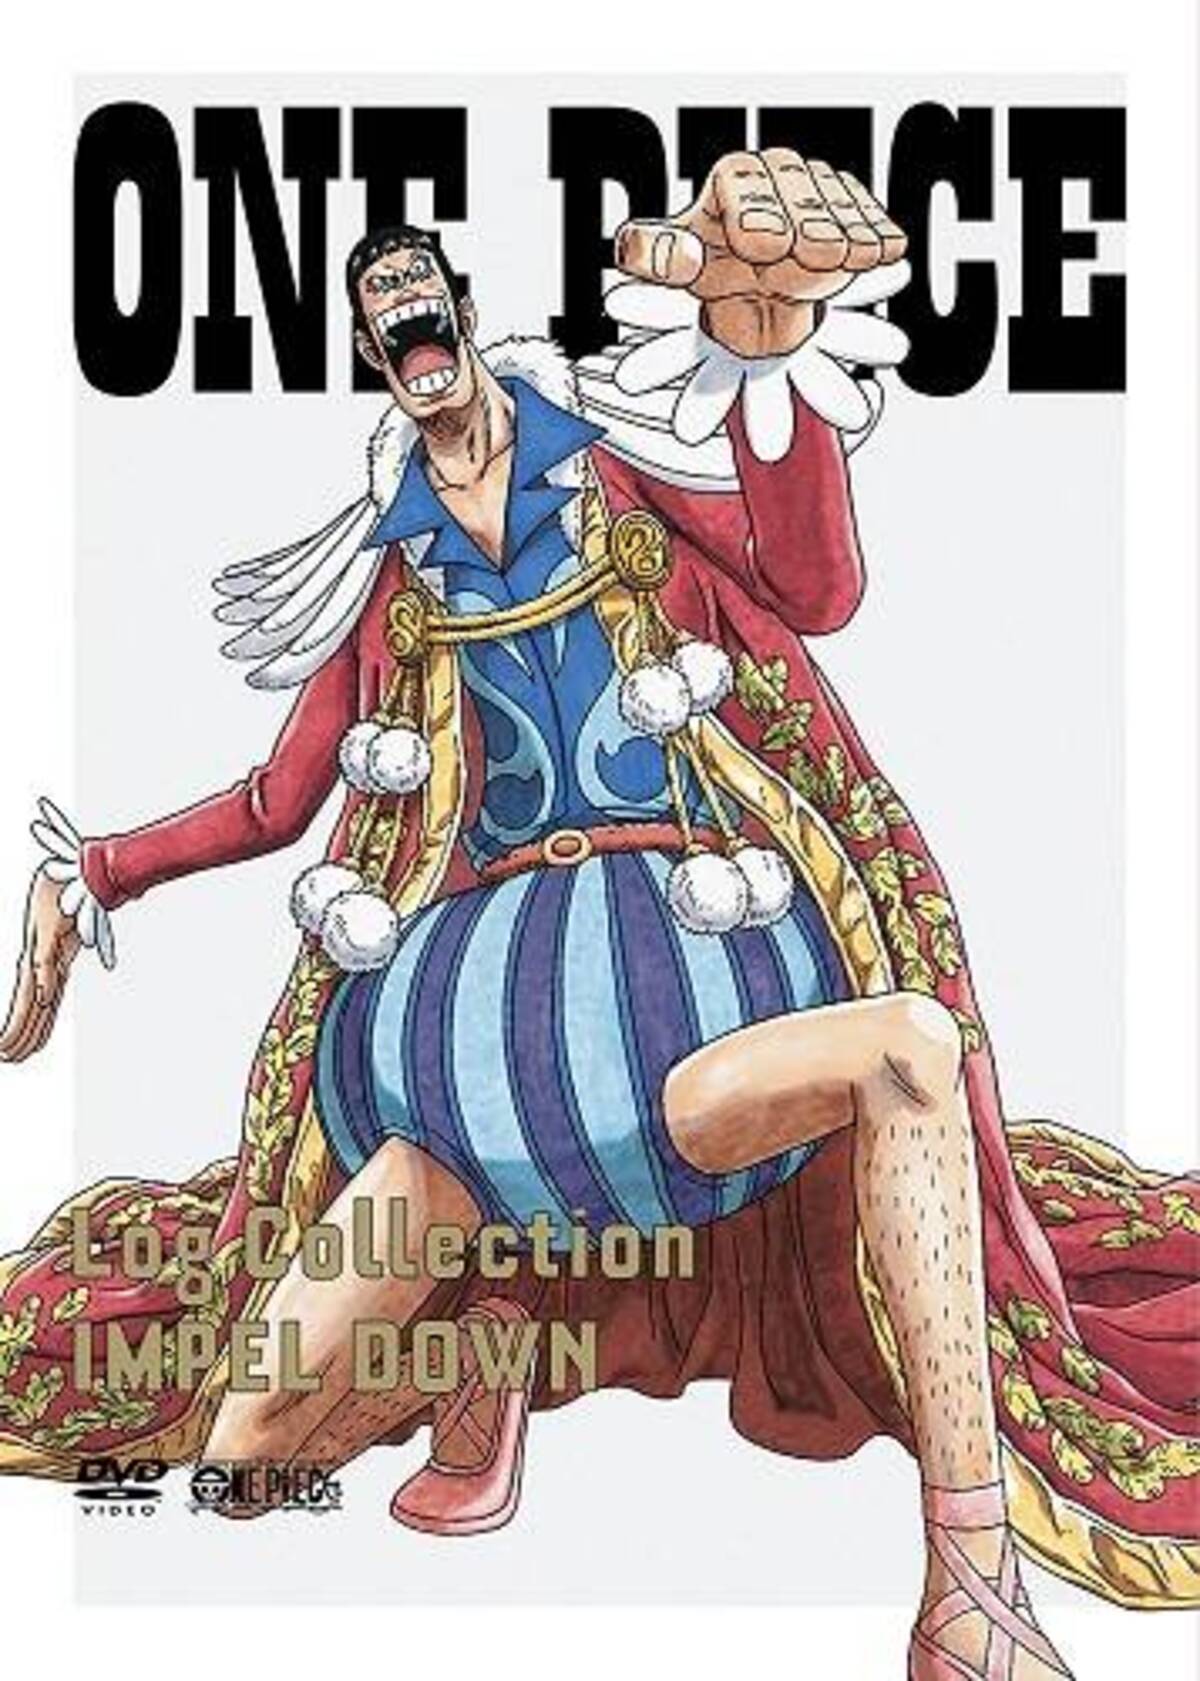 ゴムゴムの実は何位 One Piece 魅力的な悪魔の実ランキングtop10 22年8月3日 エキサイトニュース